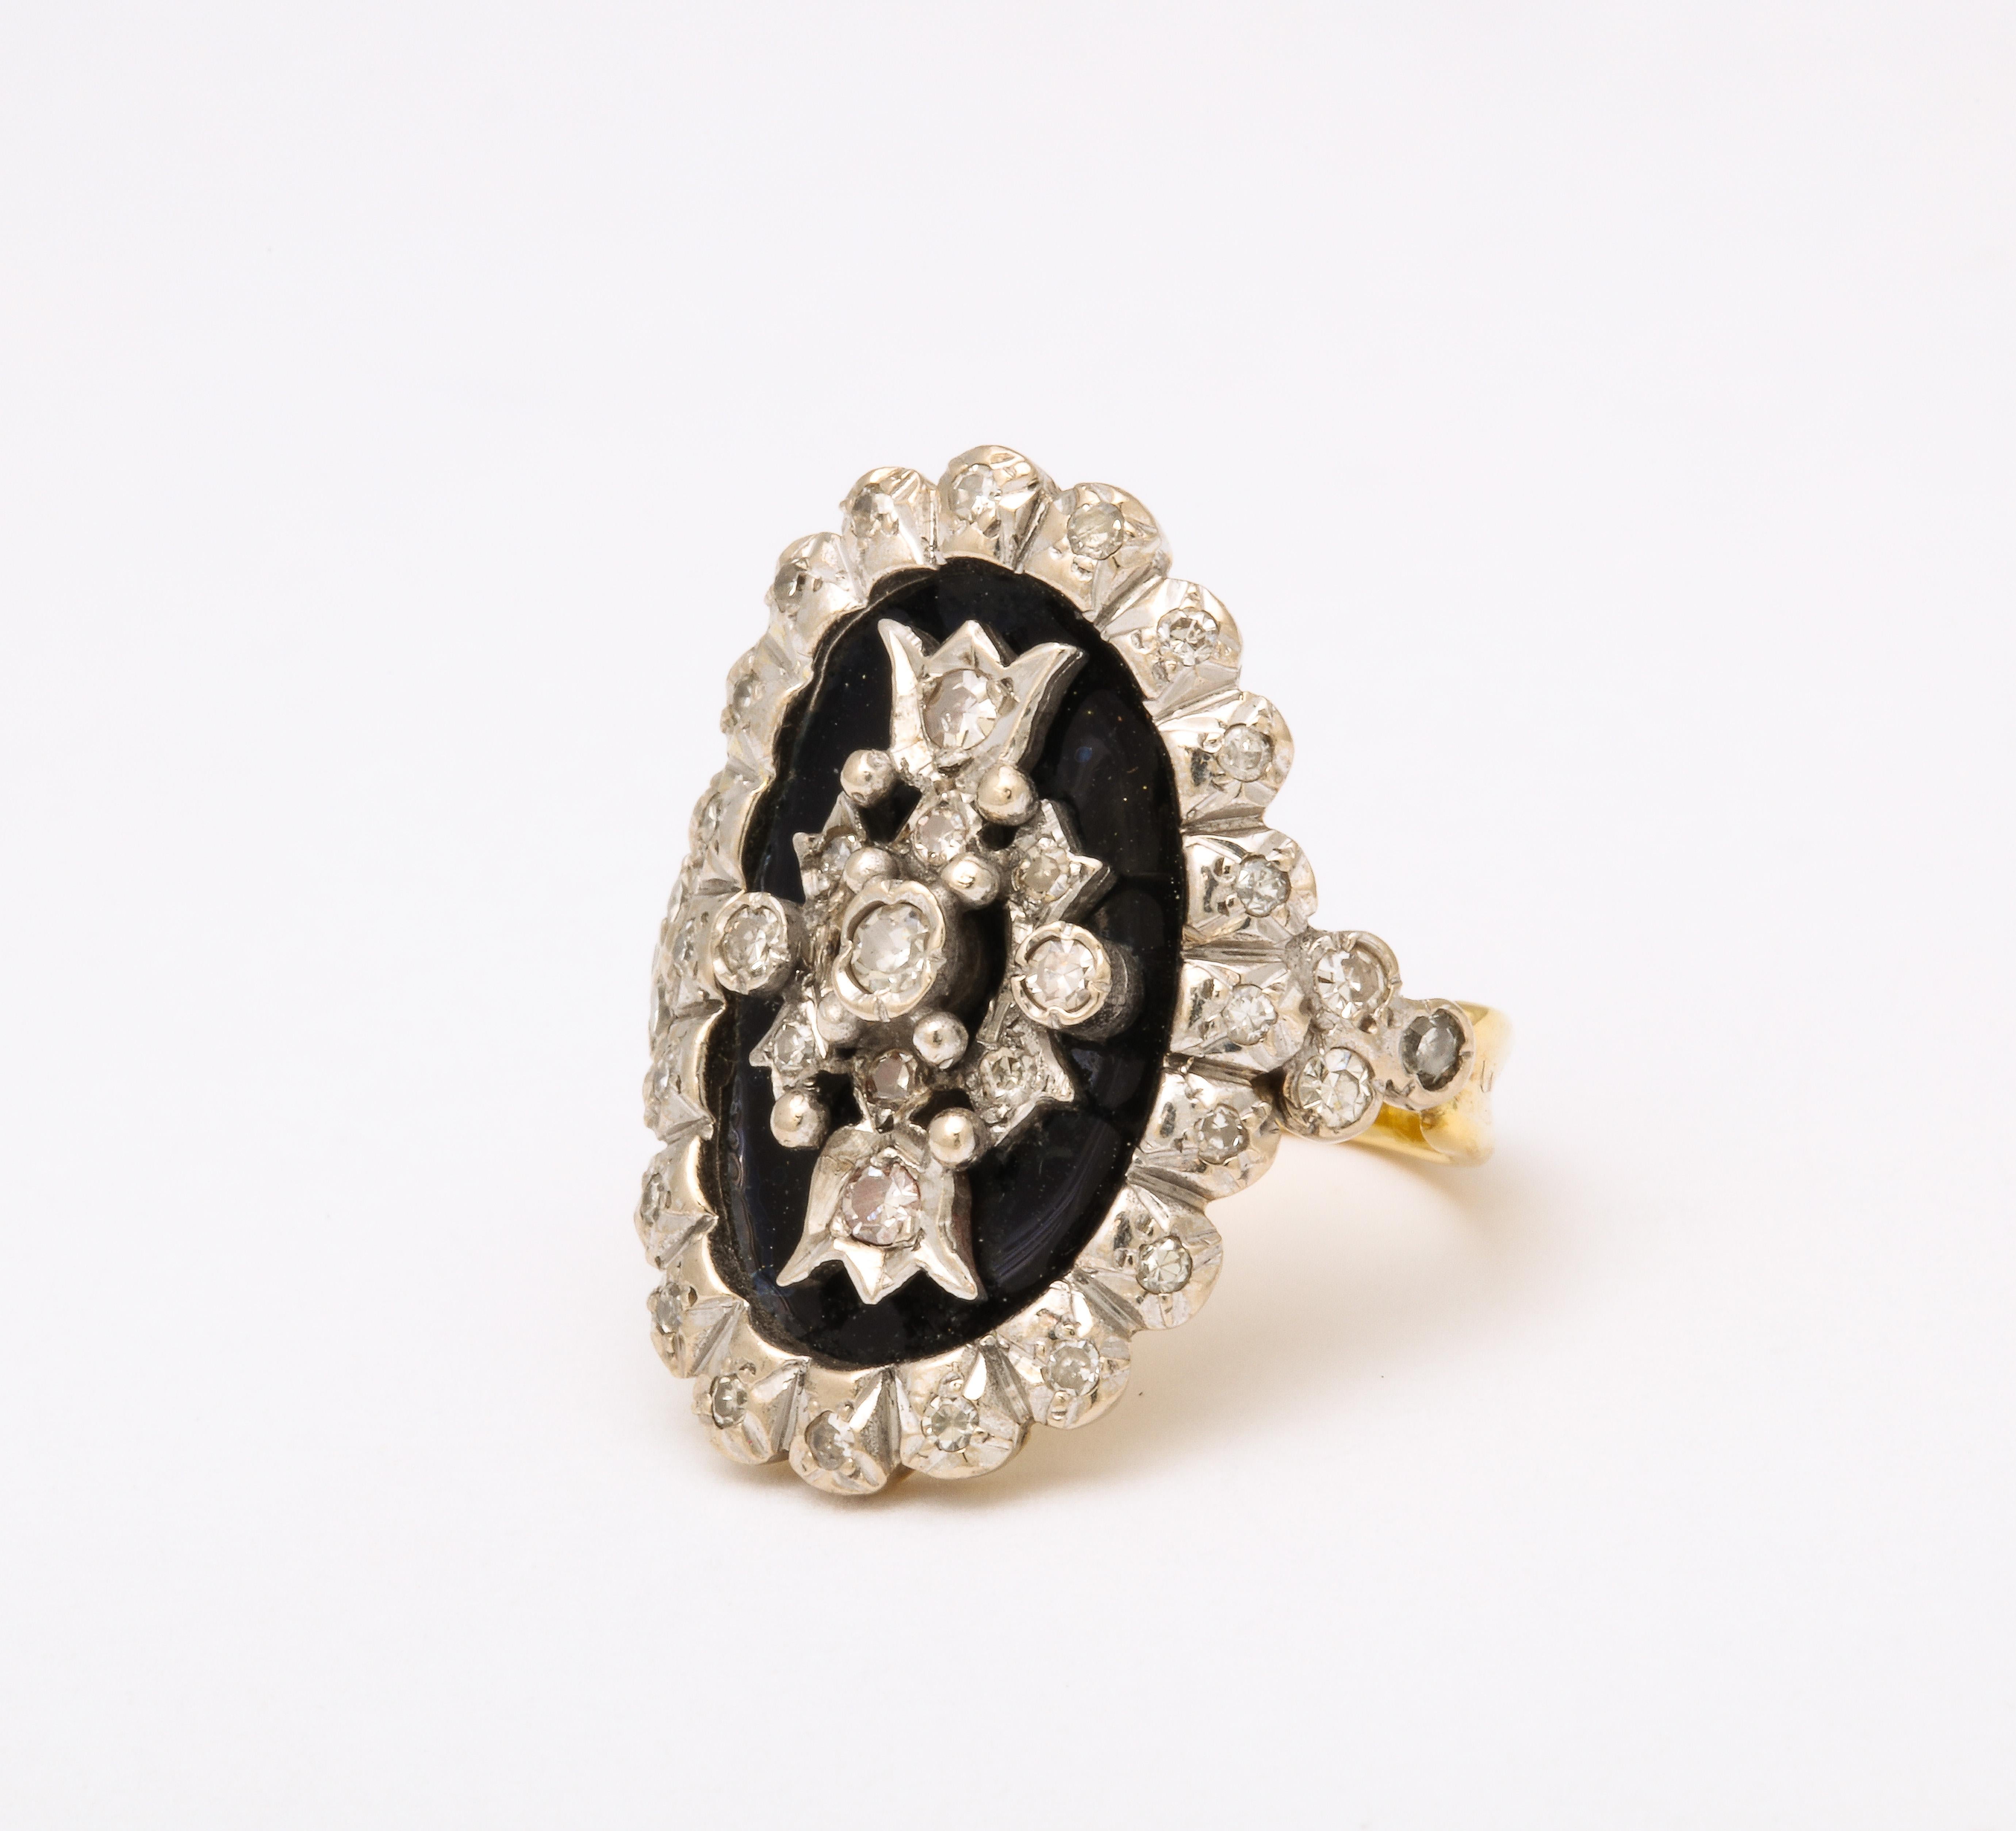 Ein sehr hübscher Ring mit Diamanten und Emaille hat die Form eines georgischen Rings, der sich um den Finger schmiegt.  Diese Wölbung macht den Ring äußerst komfortabel. Die Diamanten sind in geschlossenen Fassungen gefasst. Die Ähnlichkeit mit